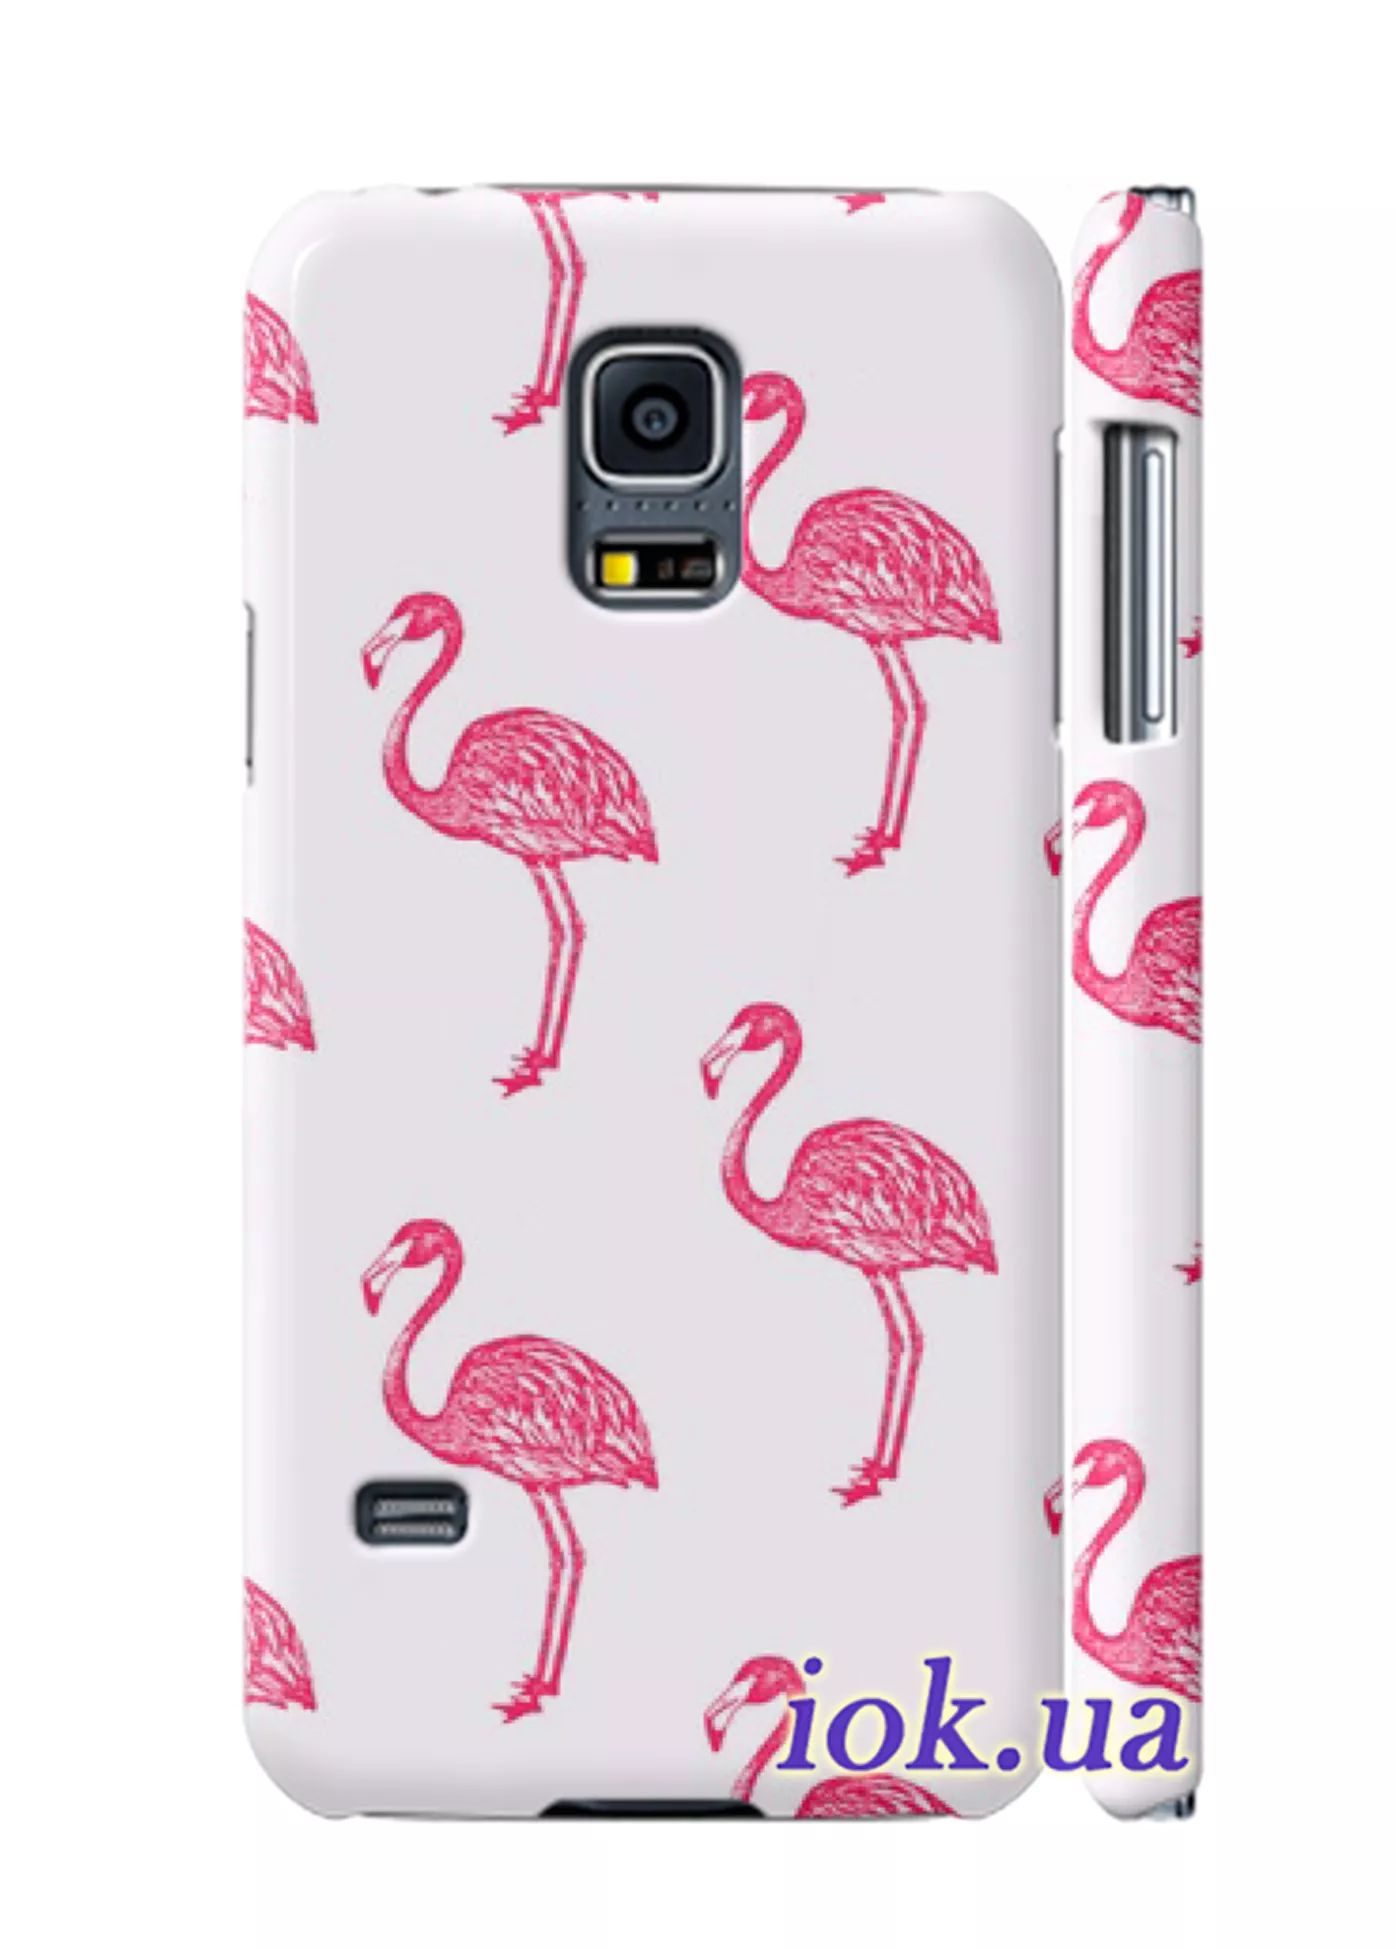 Чехол для Galaxy S5 Mini - Розовые птицы